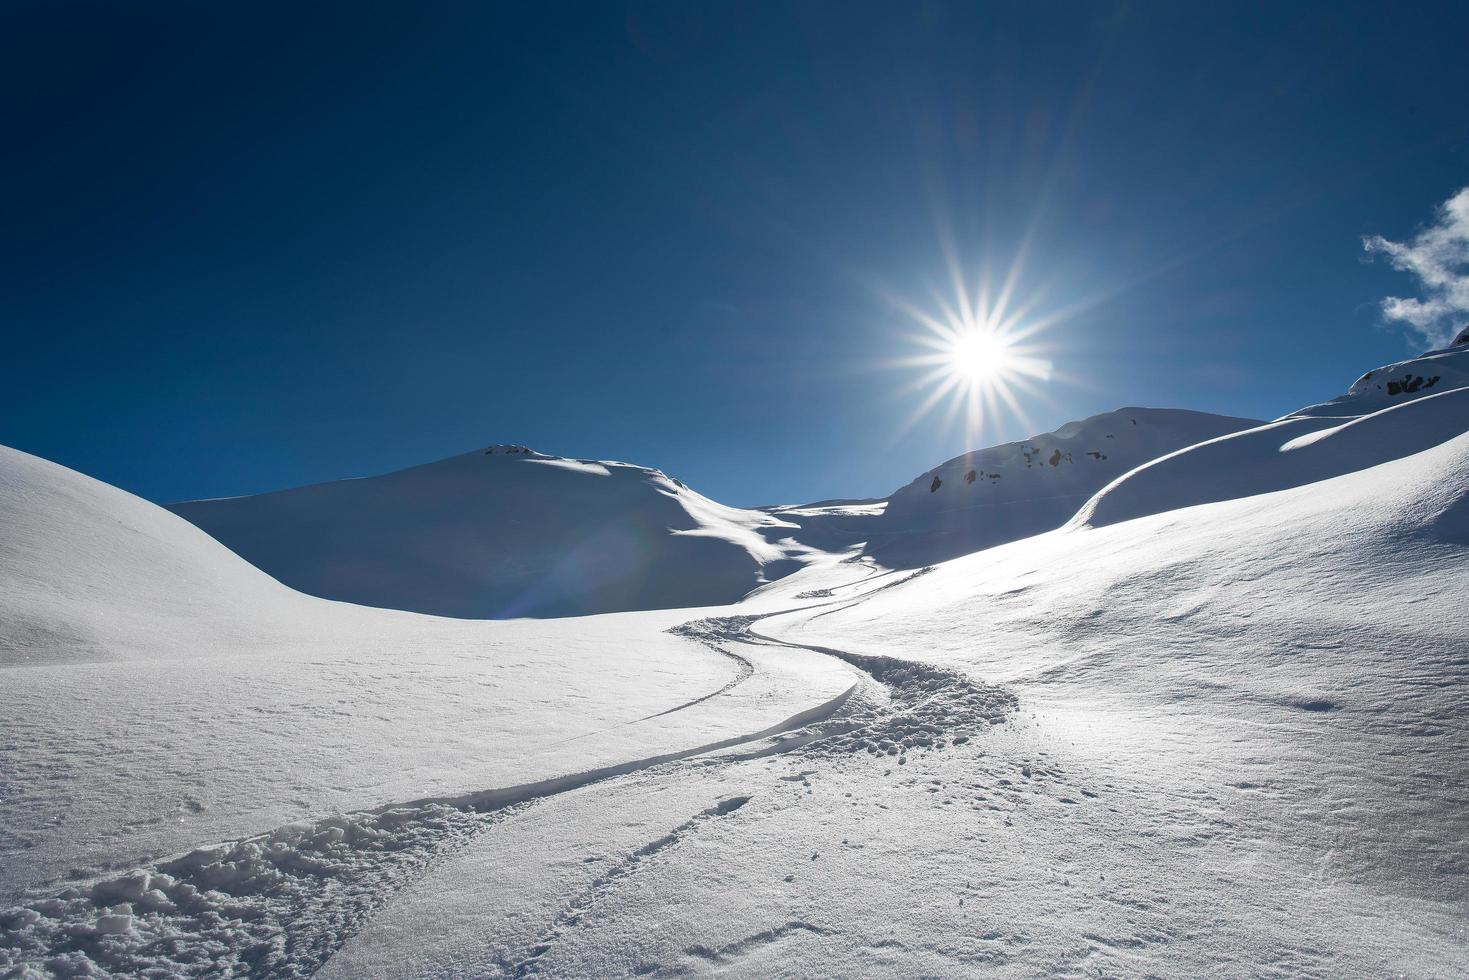 pistas de esqui na neve fresca sozinho foto